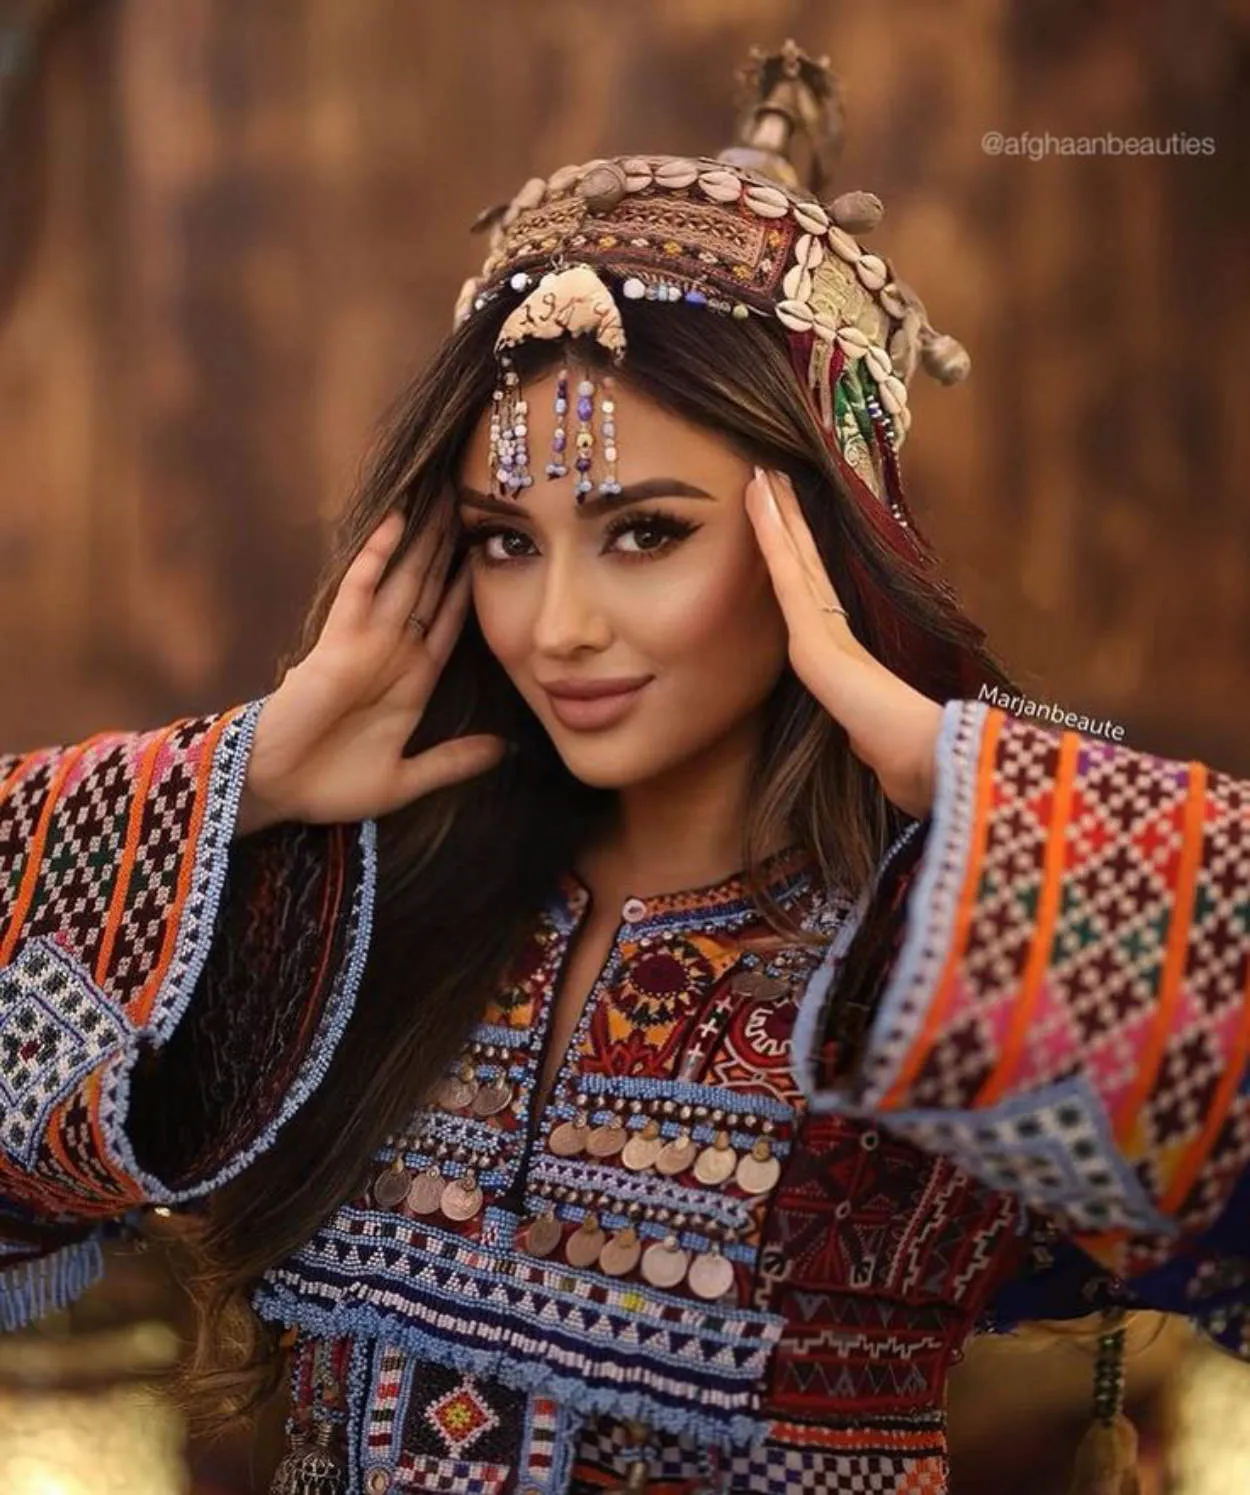 Afganistan beautiful woman or selebgram